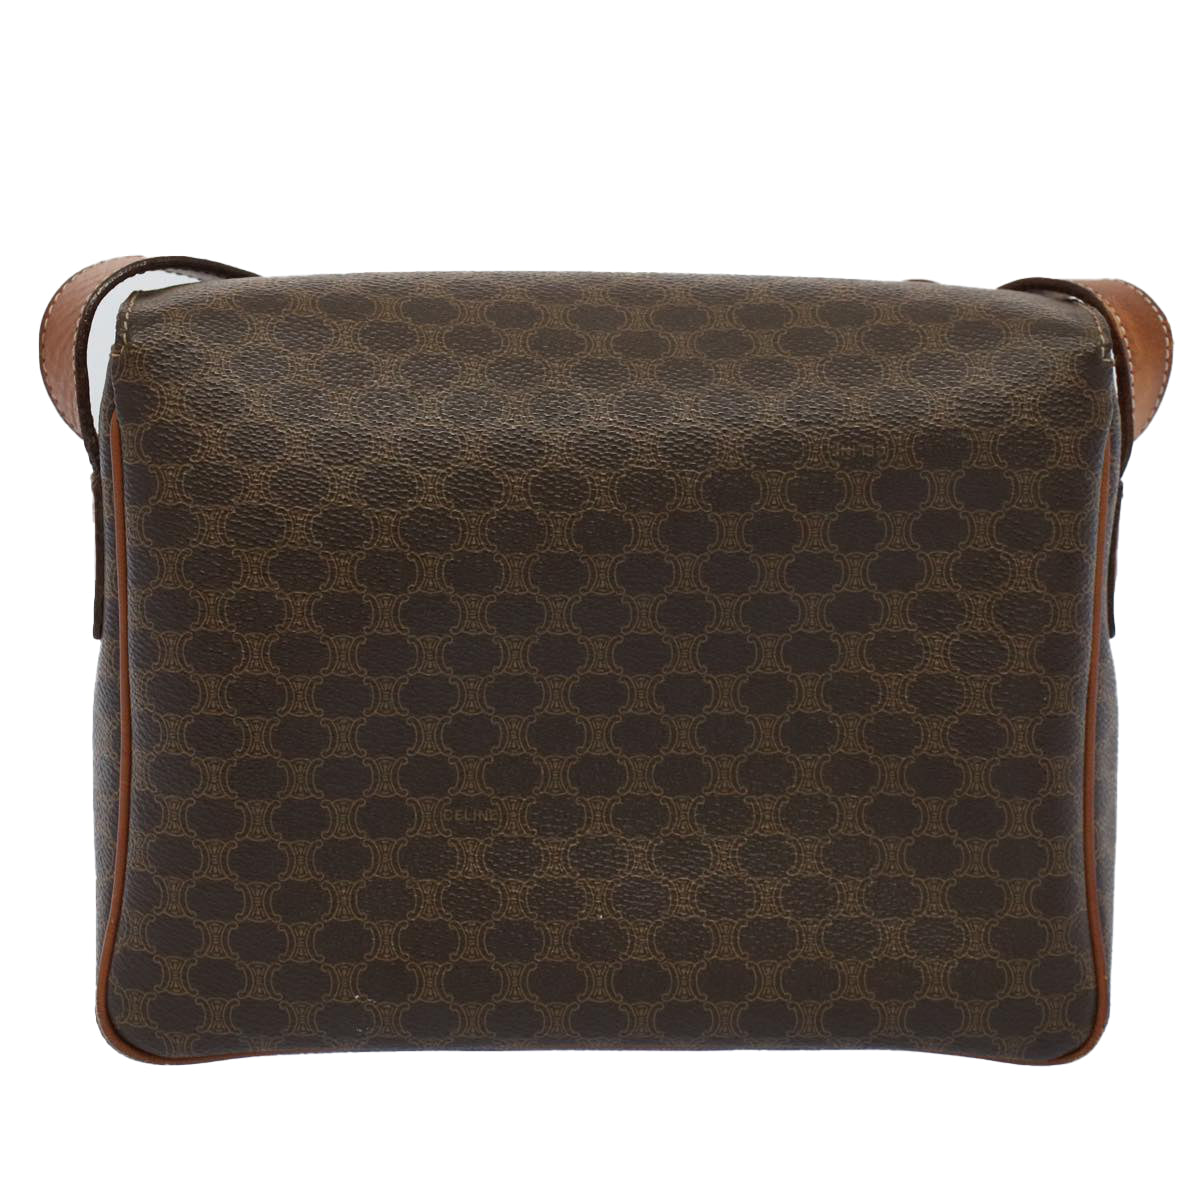 CELINE Macadam Canvas Shoulder Bag PVC Leather Brown Auth fm2799 - 0